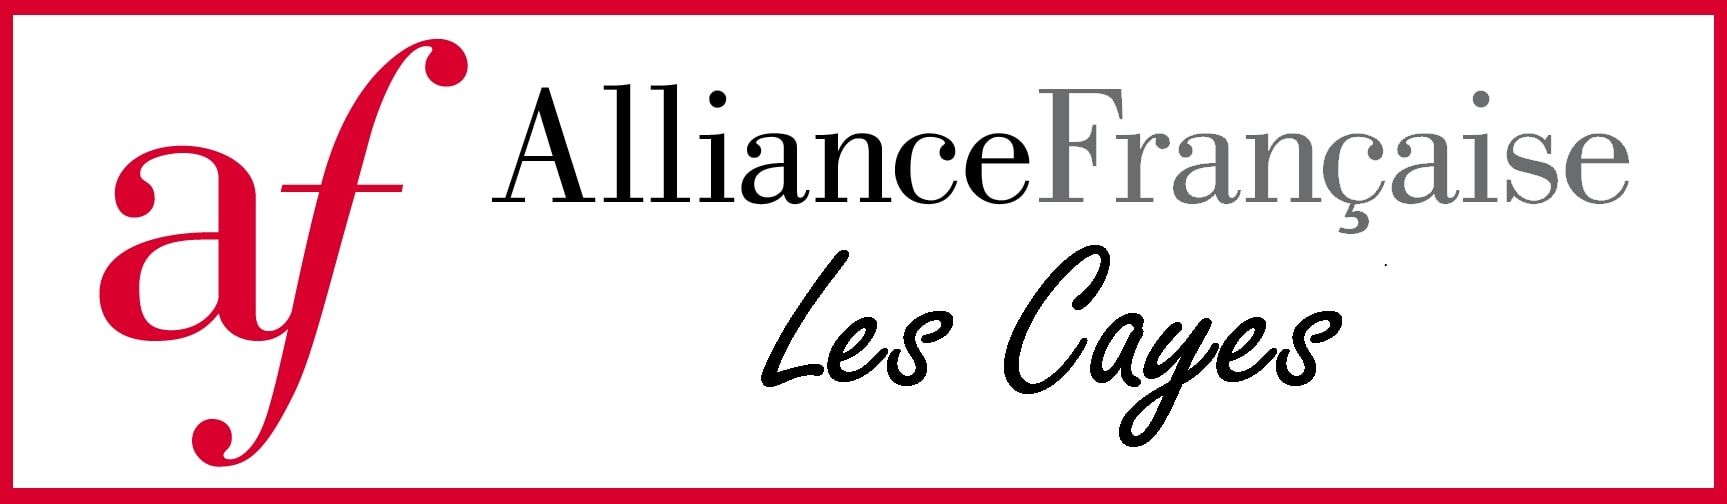 Alliance Française des Cayes